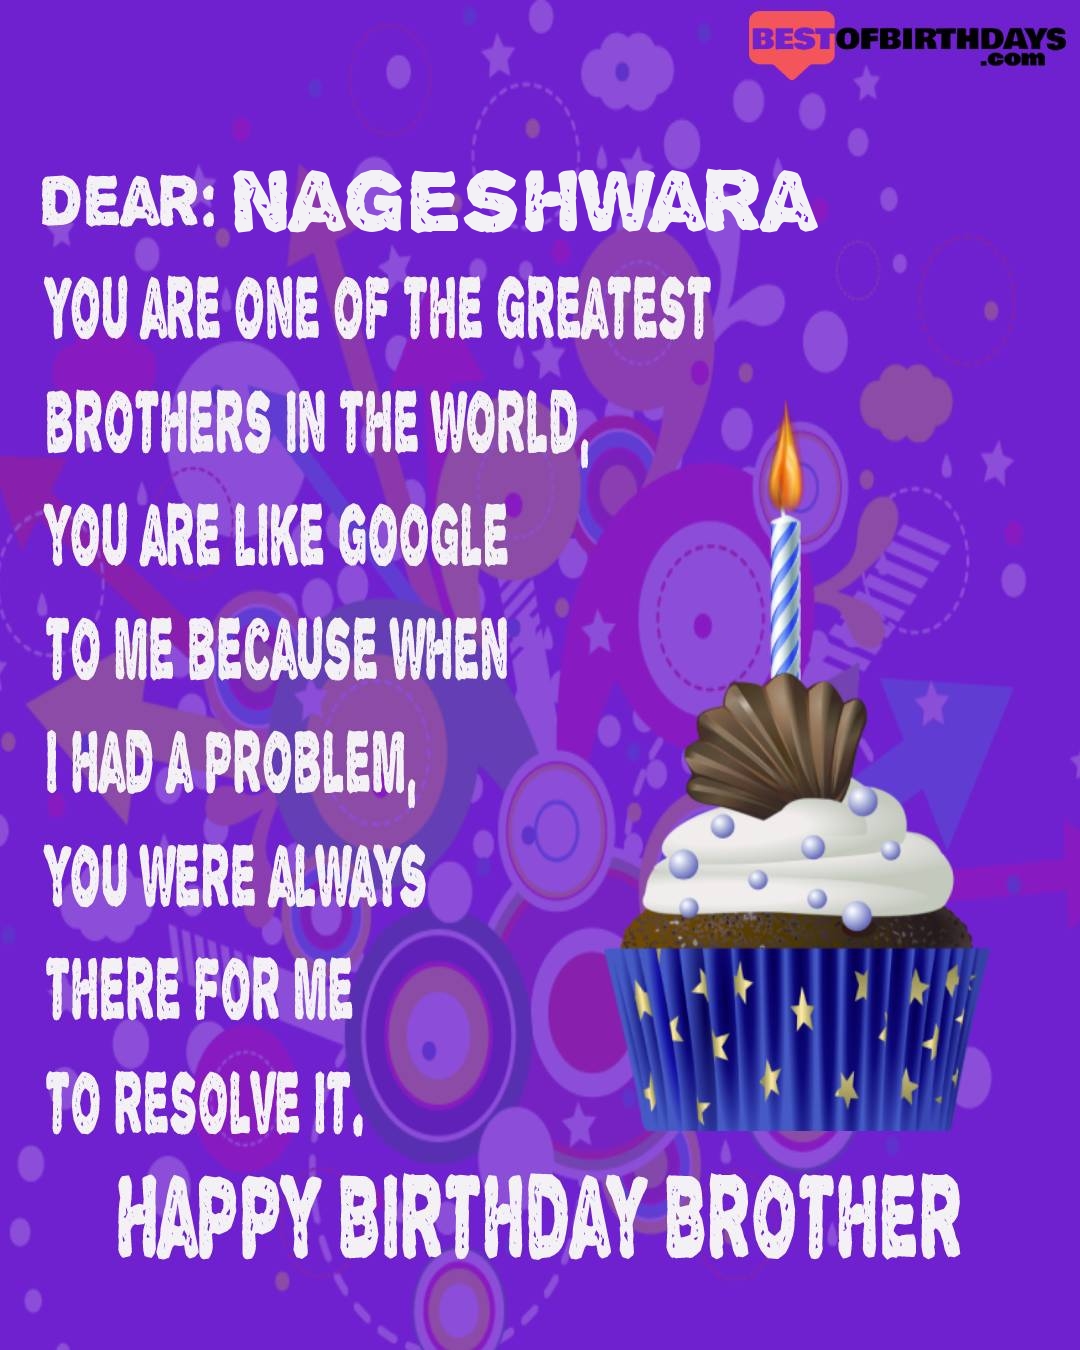 Happy birthday nageshwara bhai brother bro